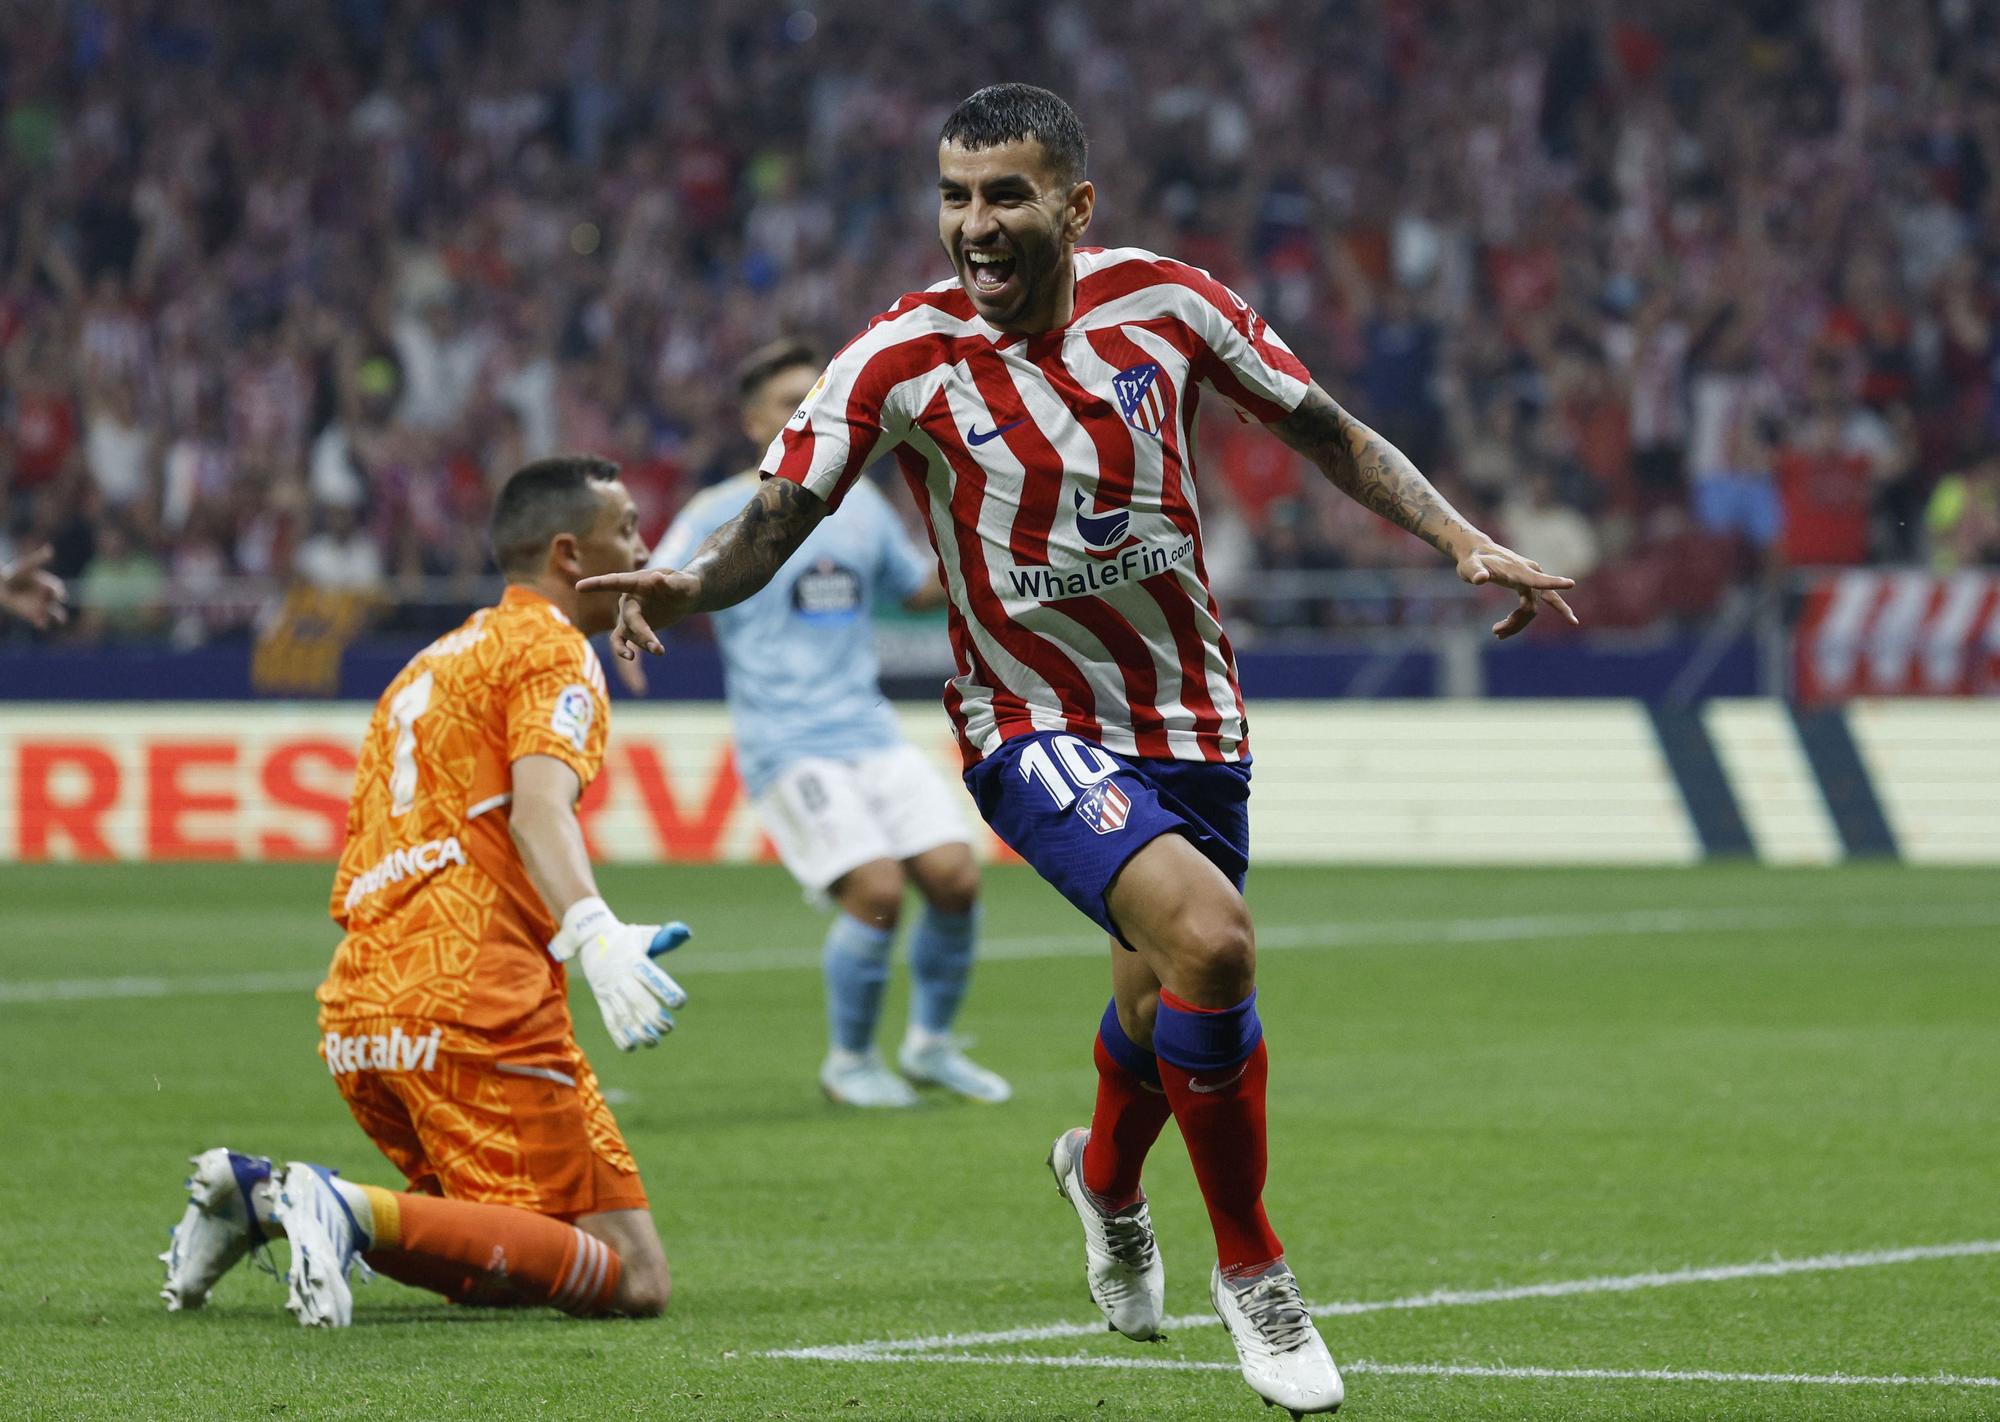 Las imágenes que resumen los mejores momentos del partido Atlético de Madrid 4-1 Celta